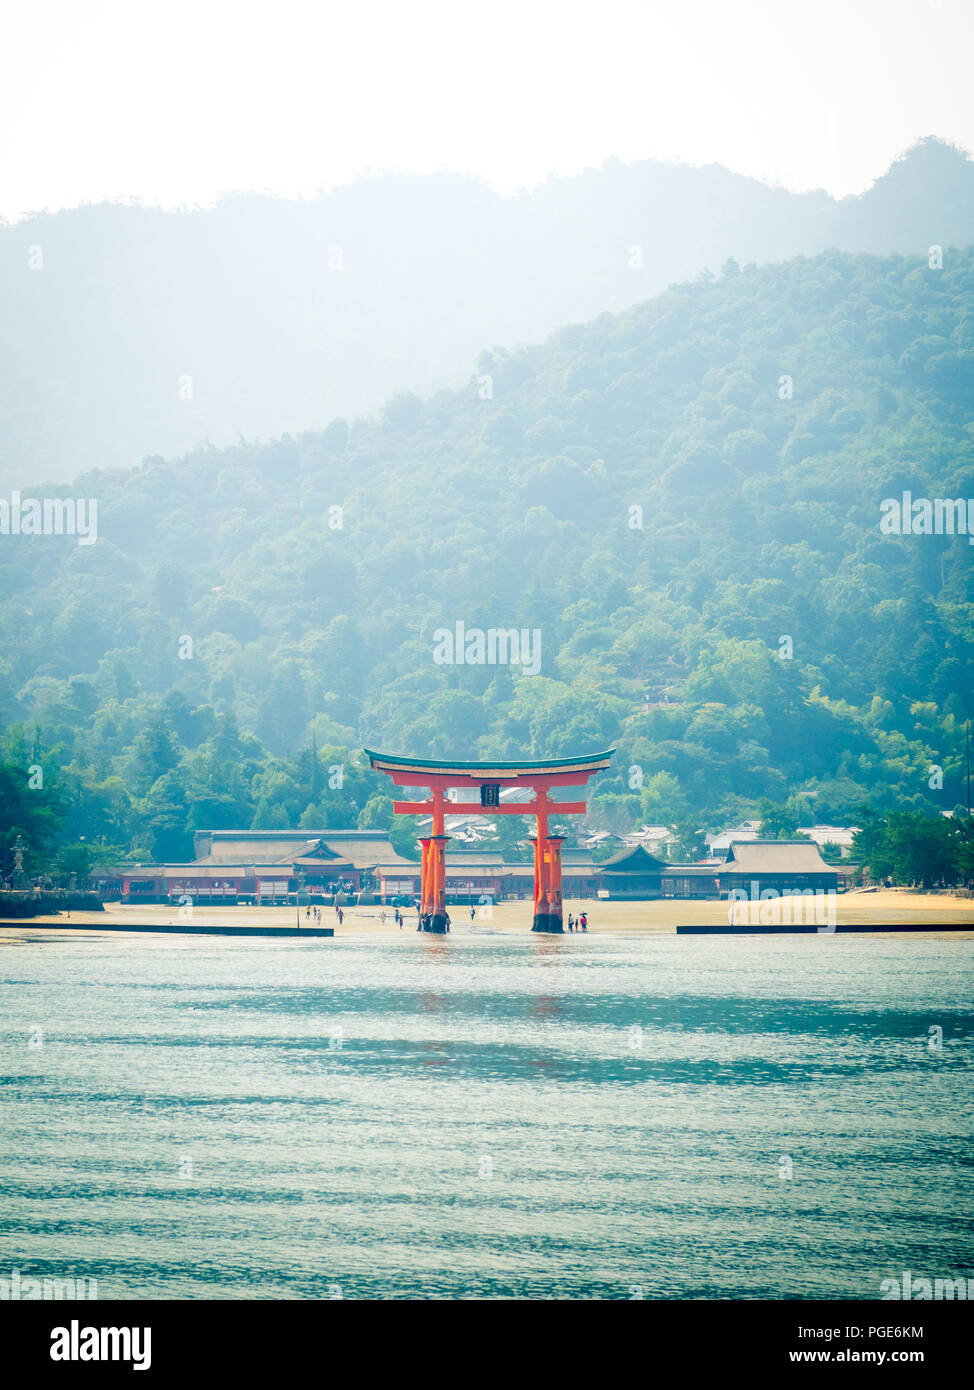 Il famoso floating torii gate del santuario di Itsukushima (Sacrario di Itsukushima-jinja) sull'isola di Miyajima (Itsukushima) nella Prefettura di Hiroshima, Giappone. Foto Stock